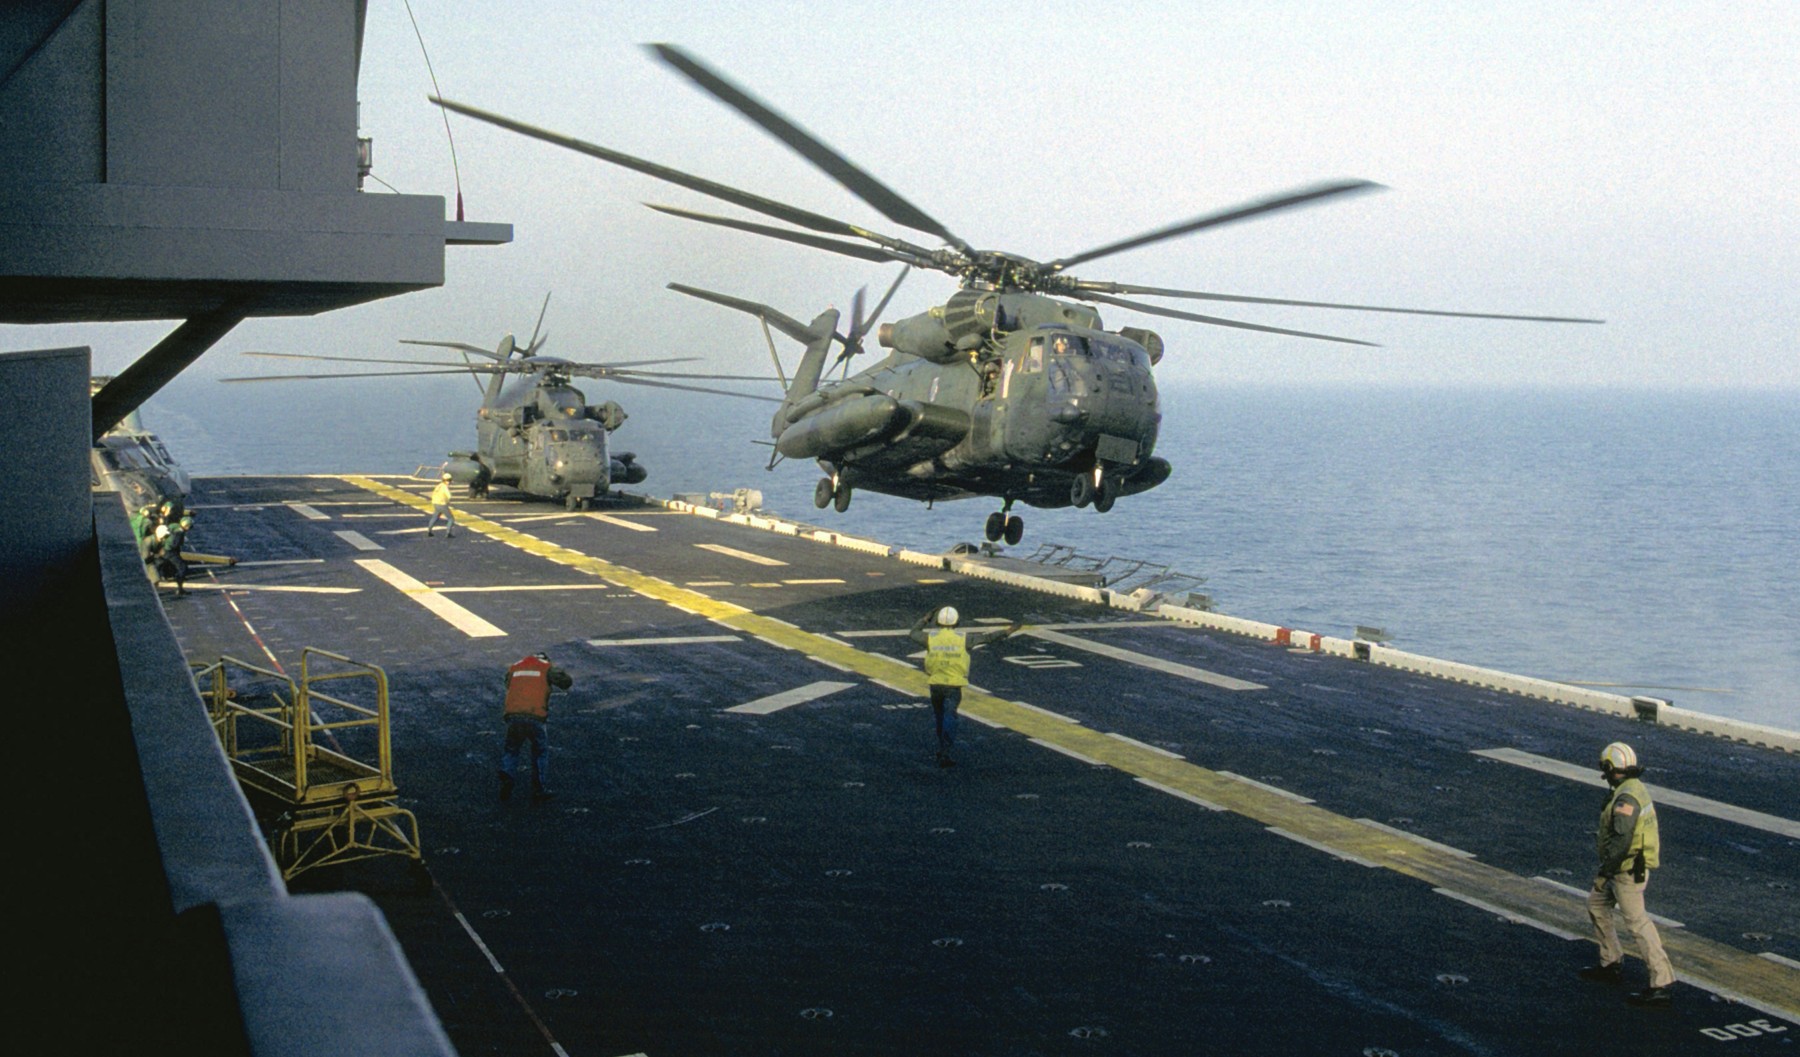 lph-12 uss inchon iwo jima class amphibious assault ship landing platform helicopter us navy hmm-266 dragon hammer 35